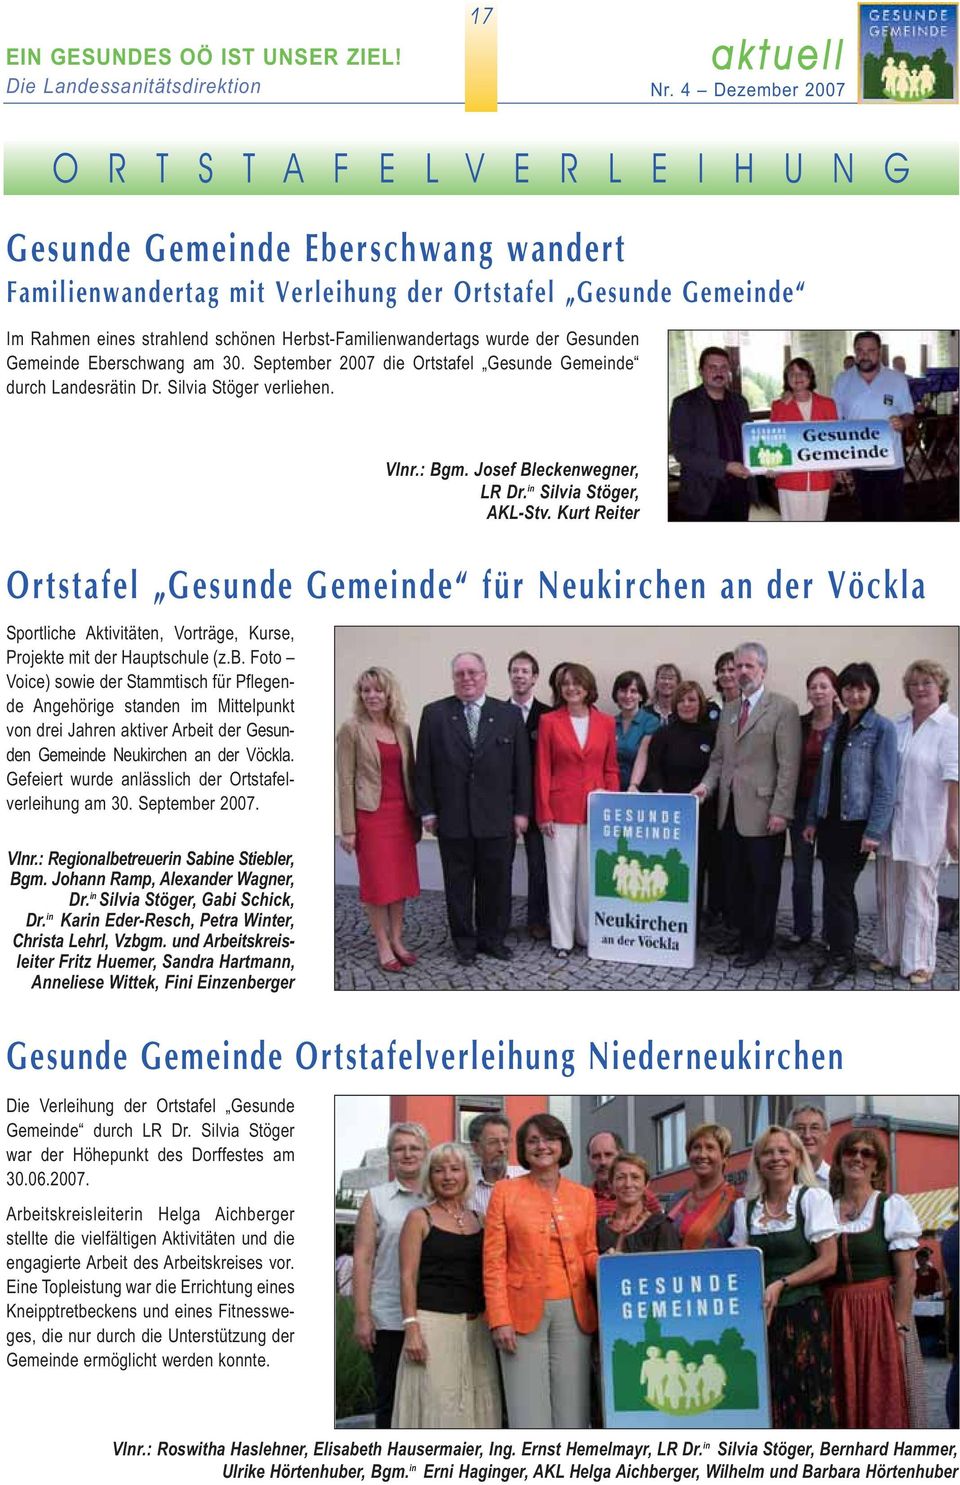 Herbst-Familienwandertags wurde der Gesunden Gemeinde Eberschwang am 30. September 2007 die Ortstafel Gesunde Gemeinde durch Landesrätin Dr. Silvia Stöger verliehen.